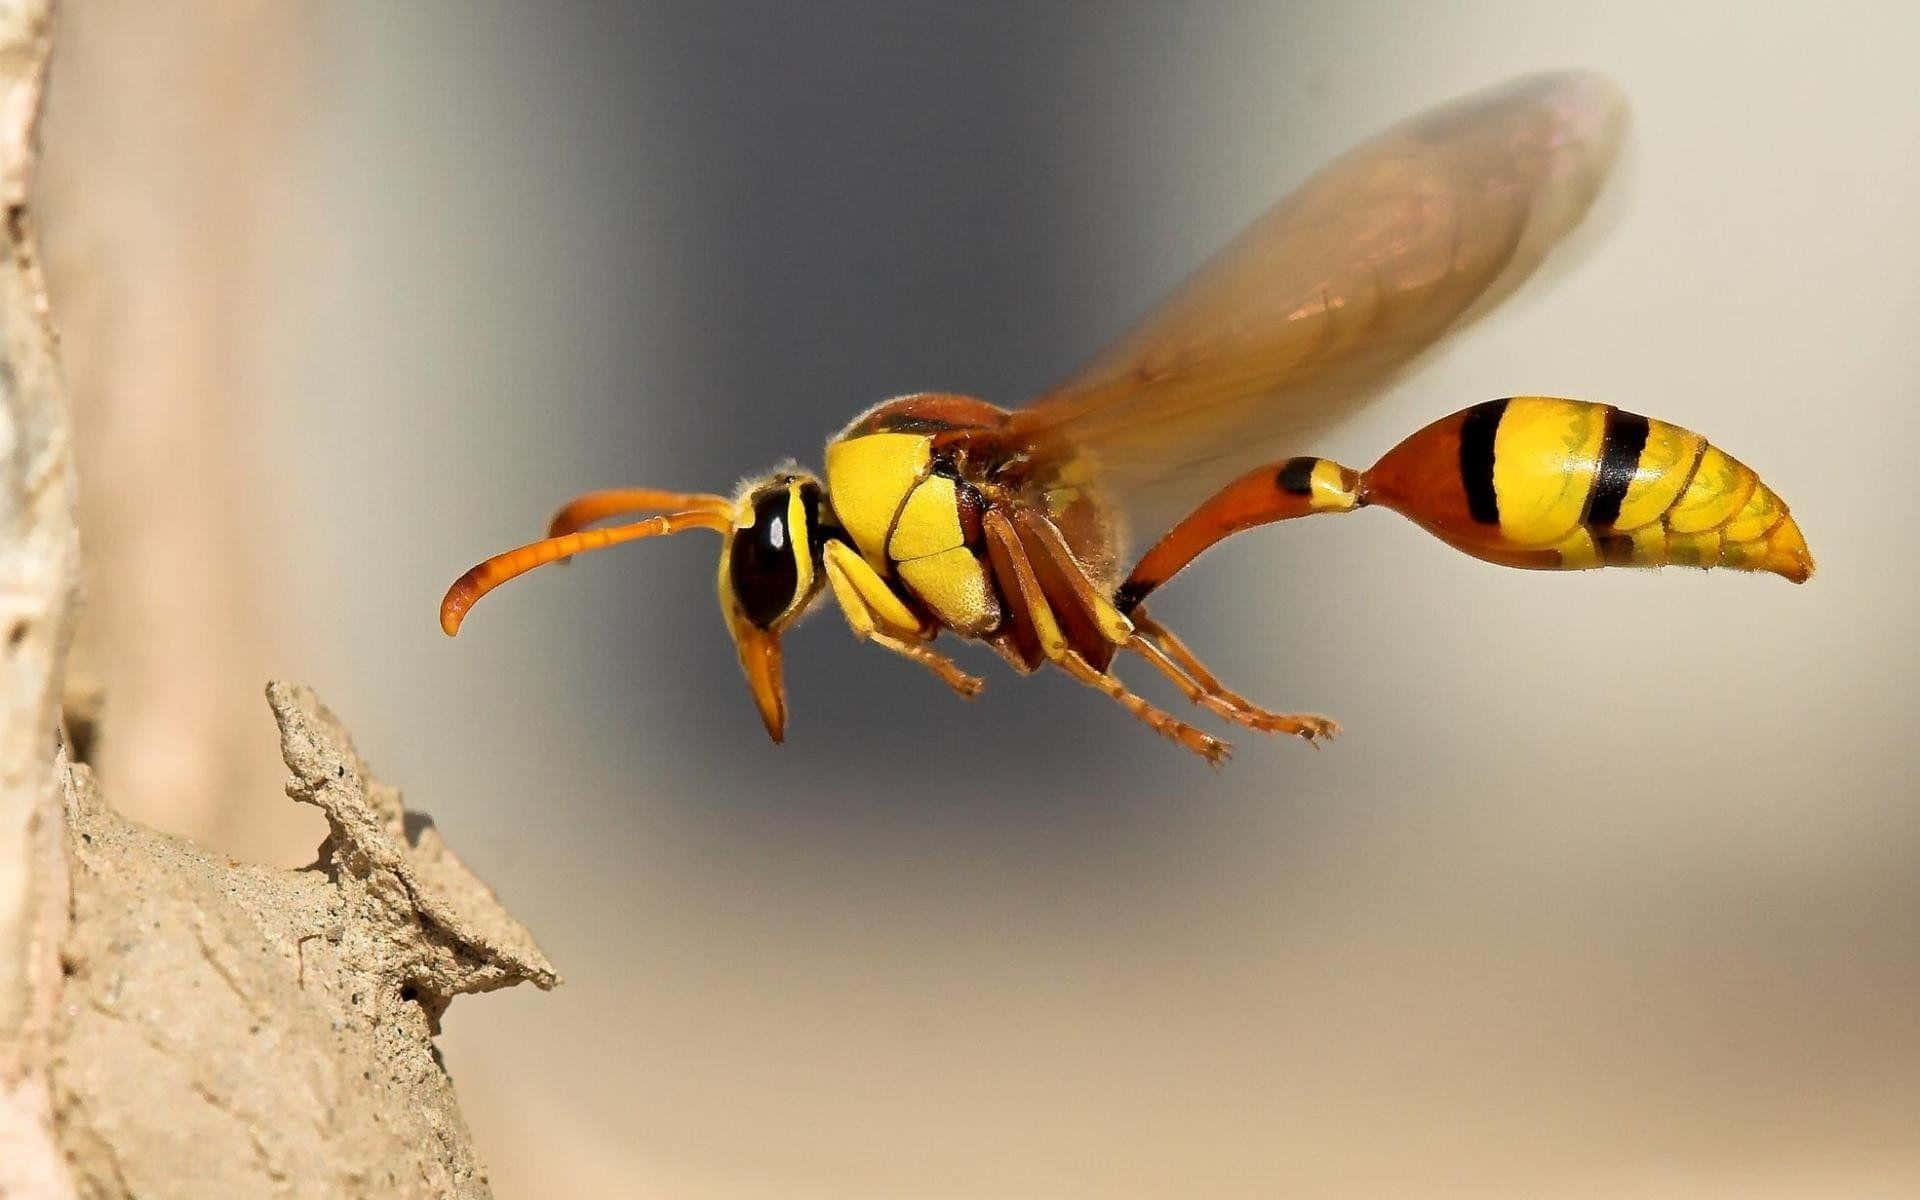 Enav Naturens Finaste Skapelser - Den Vackra Insekten